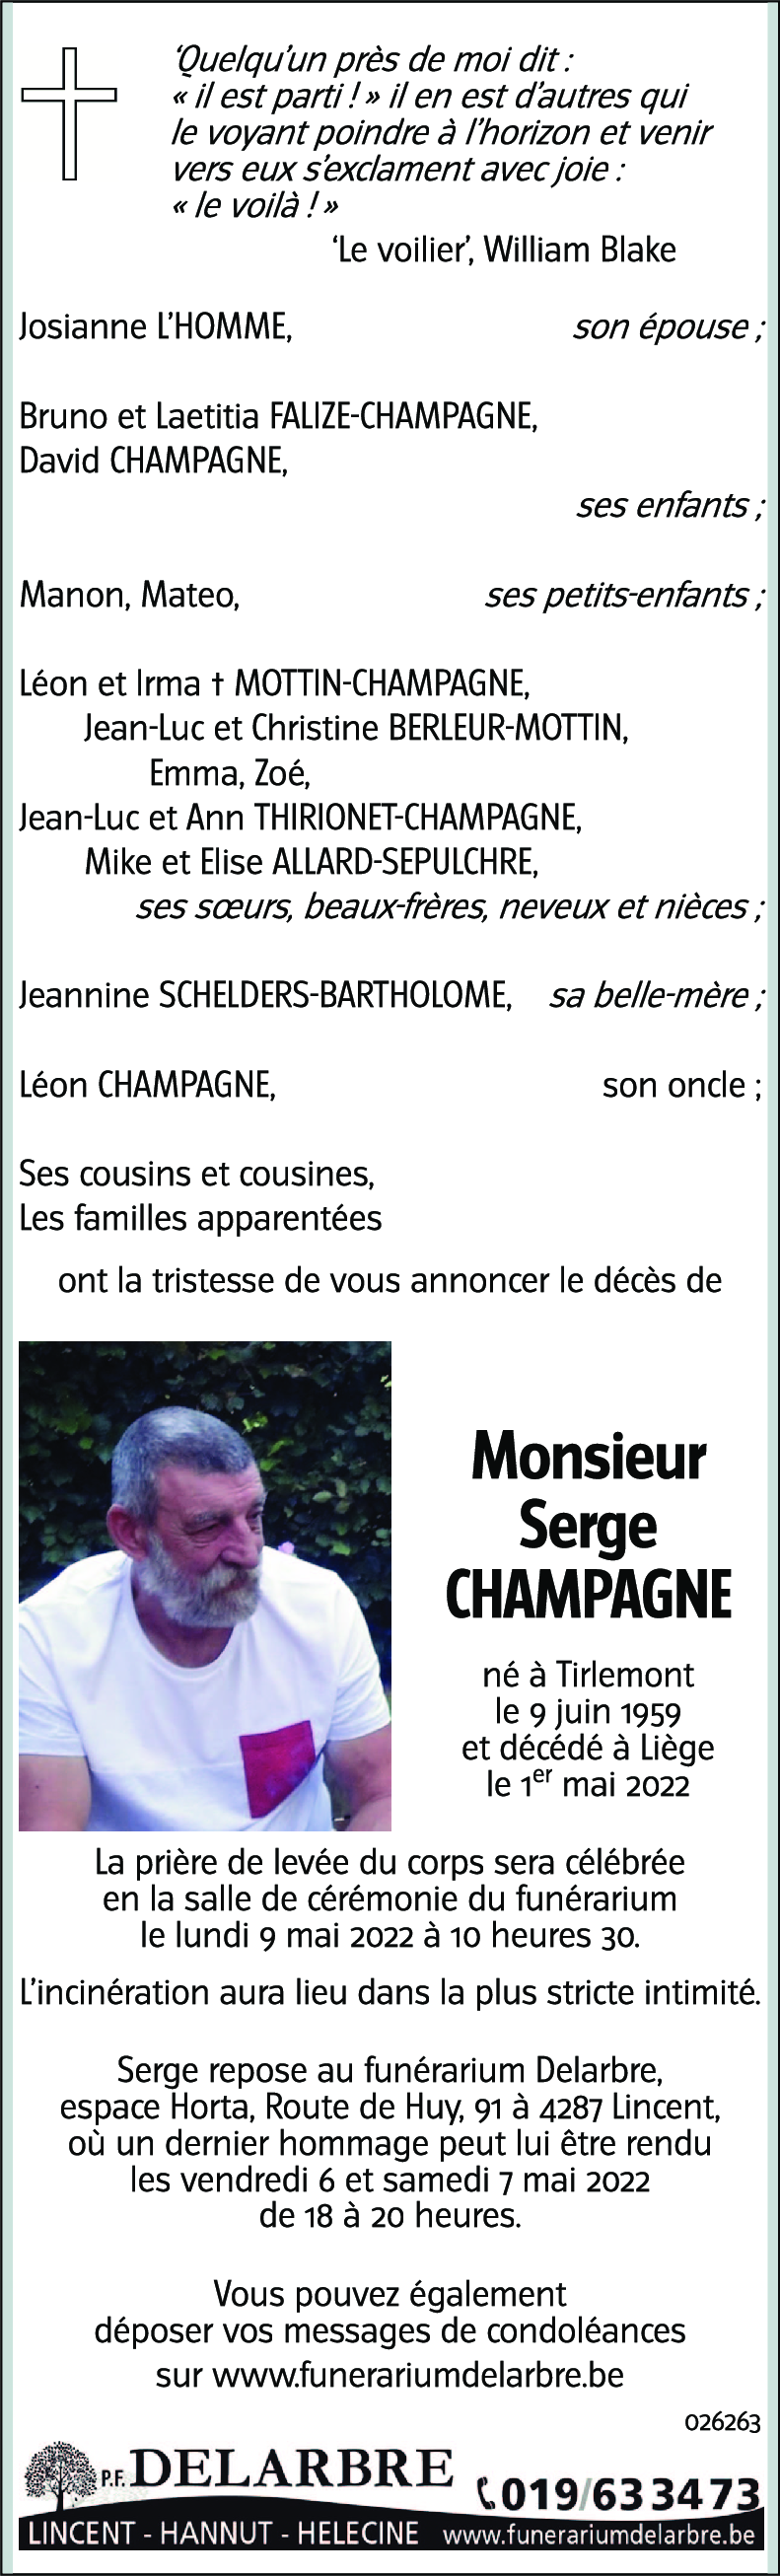 Serge CHAMPAGNE